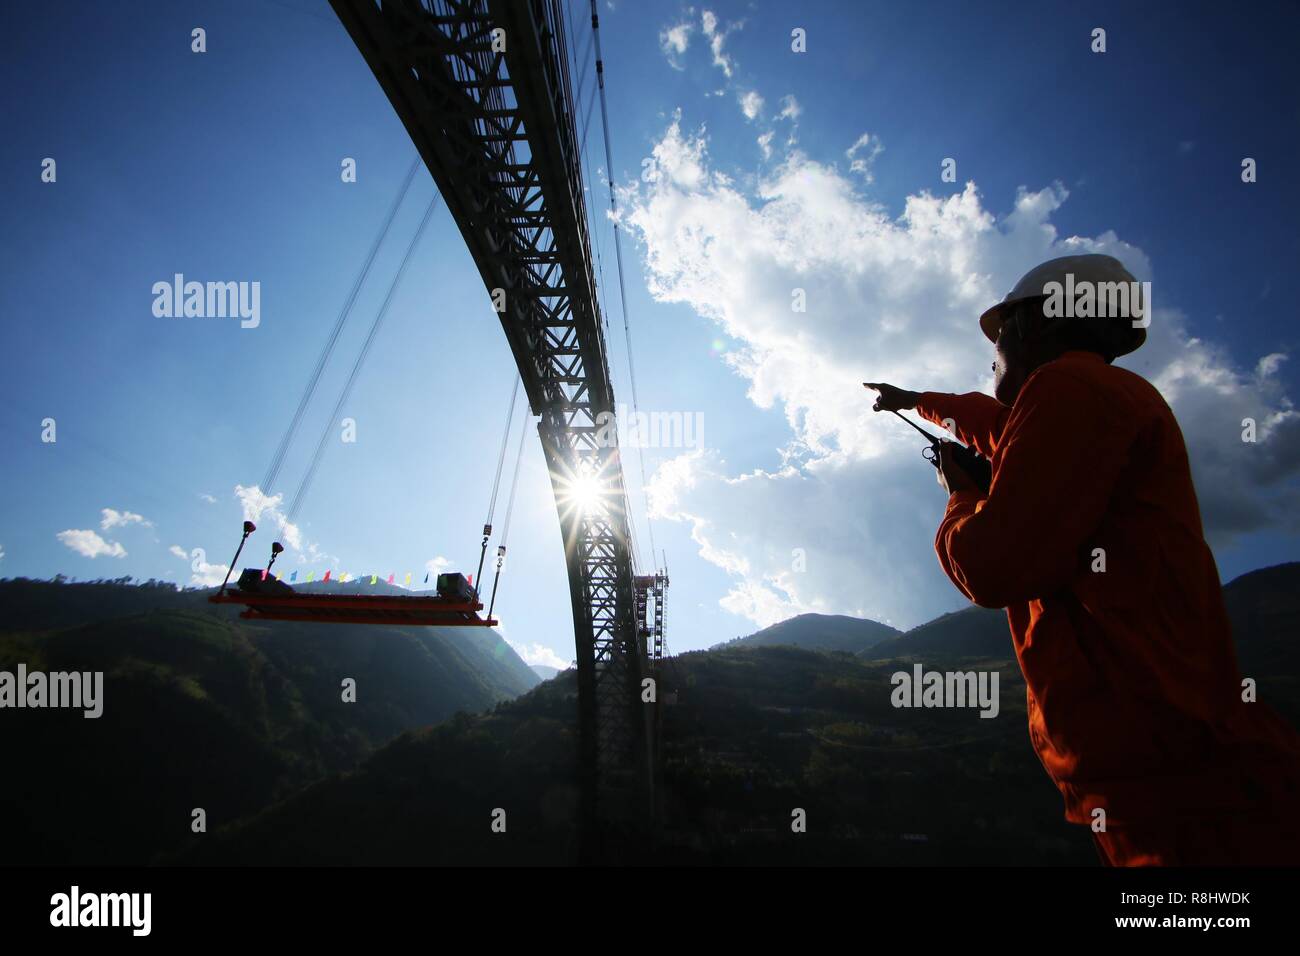 (181216) - Peking, Dez. 16, 2018 (Xinhua) - Foto am Dez. 9, 2018 zeigt die Baustelle eines Bahn bogen Brücke über den Fluß Nujiang im Südwesten der chinesischen Provinz Yunnan. Mit einem großen Bogen der Brücke am Montag Morgen errichtet, Chinesisch Konstruktoren haben die längste - spanning Eisenbahn Bogenbrücke mit einer Spannweite von 490 Meter. (Xinhua) Stockfoto